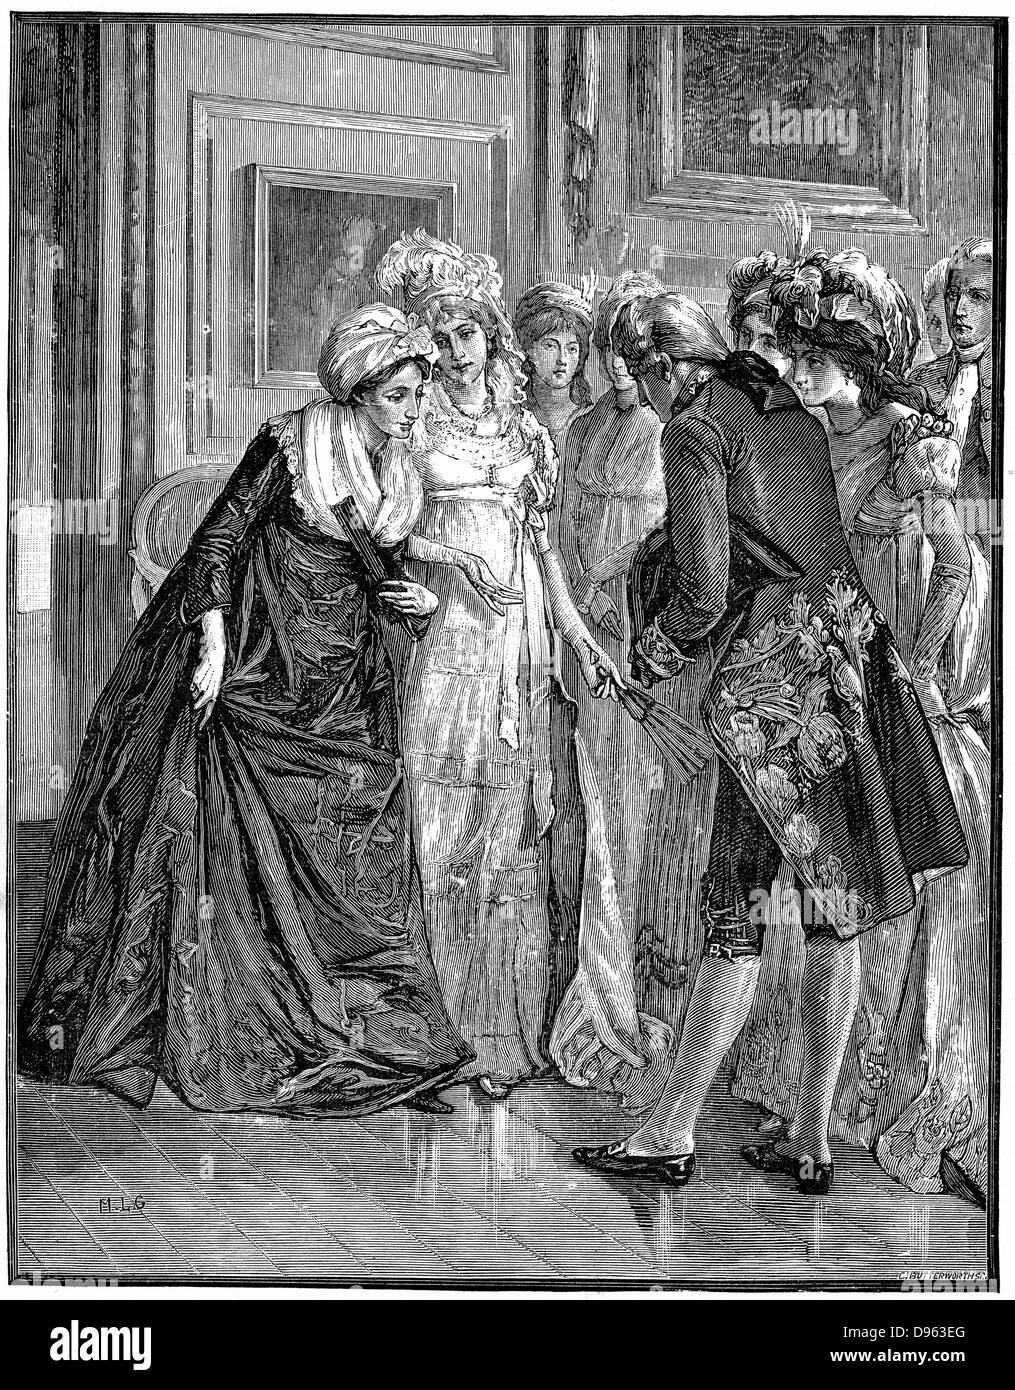 Hannah Mehr (1745-1833) Englisch religiösen Schriftsteller und Dramatiker, und Mitglied des Blauen Strumpf Kreis der intelligente gebildete Frauen, in die Gesellschaft eingeführt, die von der Herzogin von Gloucester. Holzstich. Stockfoto